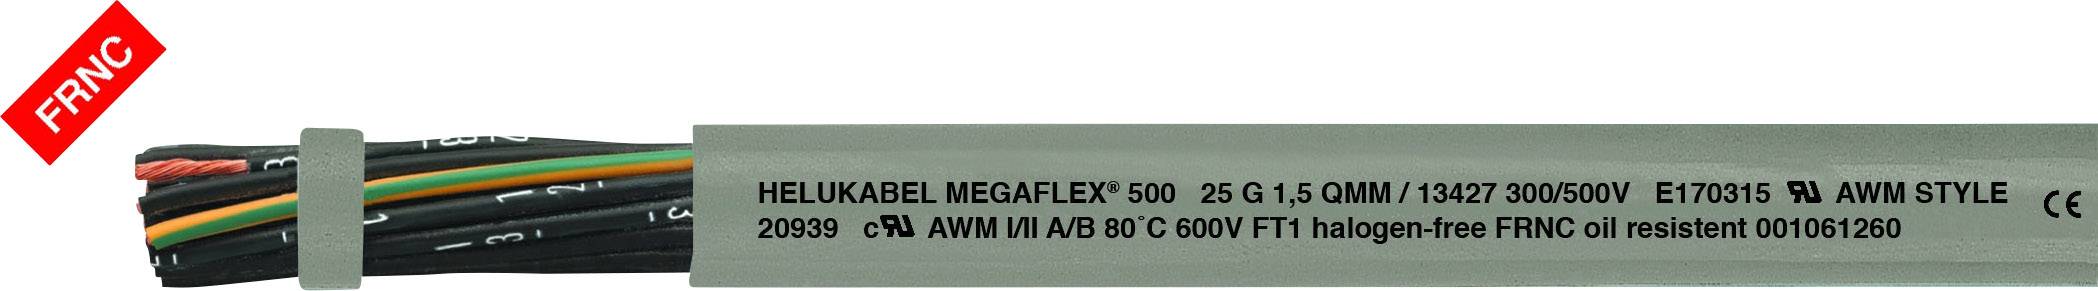 HELUKABEL MEGAFLEX® 500 Steuerleitung 3 G 0.50 mm² Grau 13345 Meterware